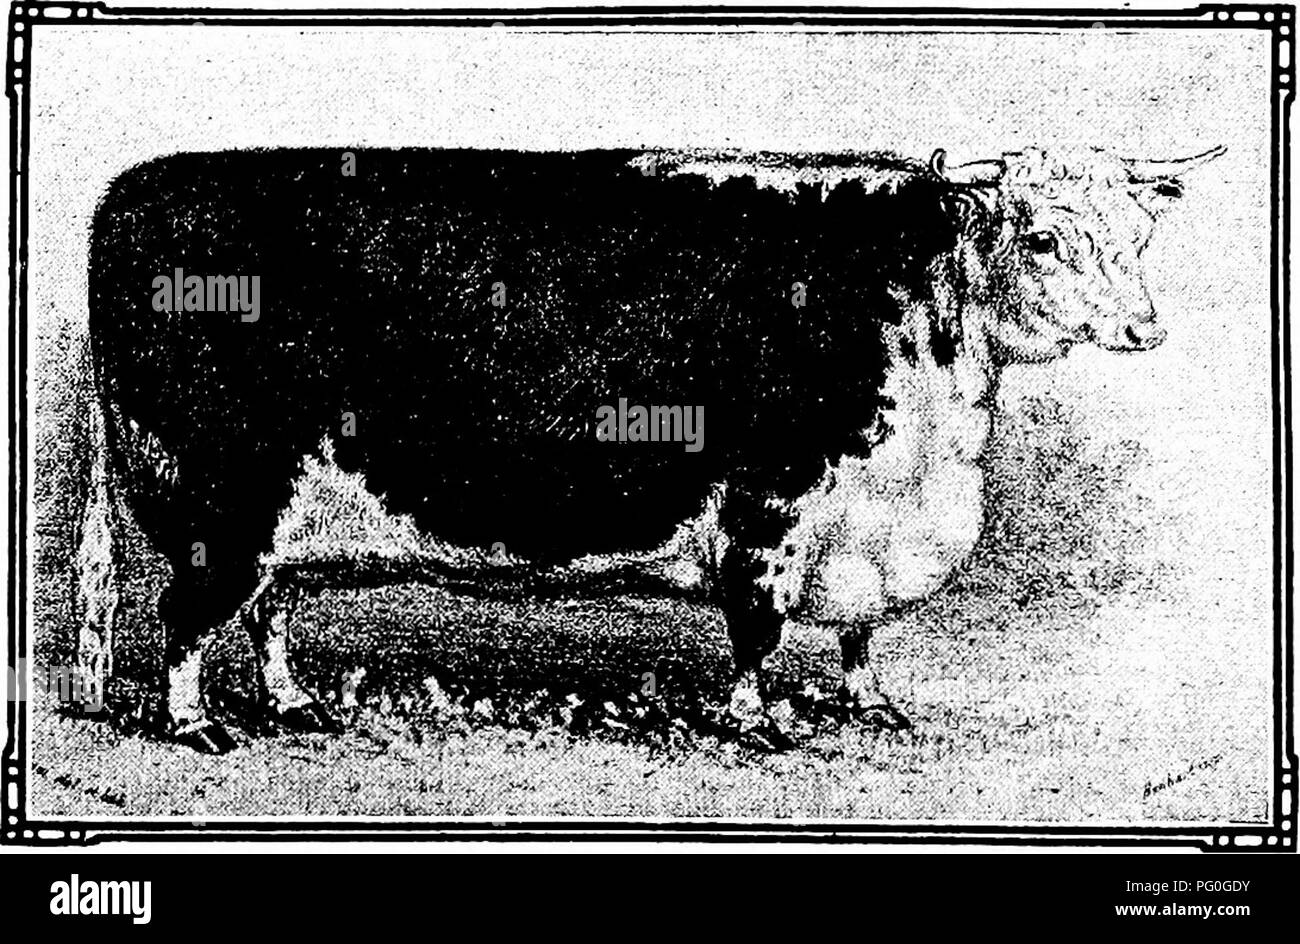 . La historia de los Herefords : una cuenta del origen y desarrollo de la raza en Herefordshire, un bosquejo de su temprana introducción en los Estados Unidos y Canadá, y el subsiguiente aumento de popularidad en el comercio del ganado occidental, con diversas notas sobre la gestión de manadas reproductoras . El ganado Hereford. WASHINGTON (8152) EN DOS TEAKS-BEBD HDGHES POR A. B... YBAES ELBYBN BBATBICB EN DOS MESES-BSKD por UBS. SDWAED8. Por favor tenga en cuenta que estas imágenes son extraídas de la página escaneada imágenes que podrían haber sido mejoradas digitalmente para mejorar la legibilidad, la coloración y el aspecto de estas ilustraciones pueden Foto de stock